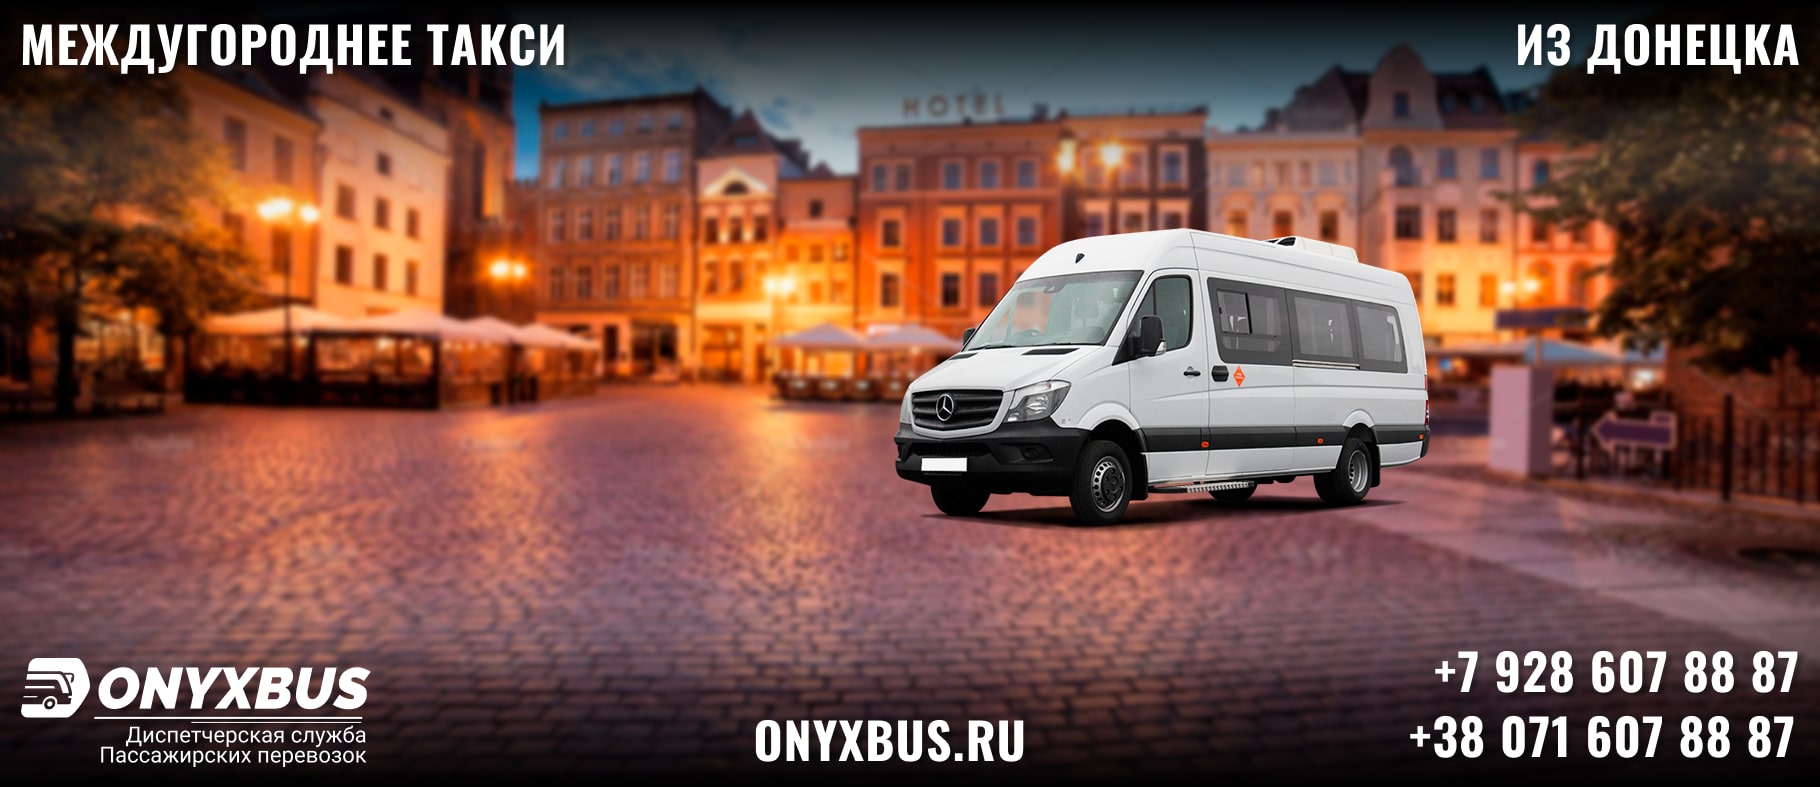 Заказ <br>Микроавтобуса Донецк - Судак